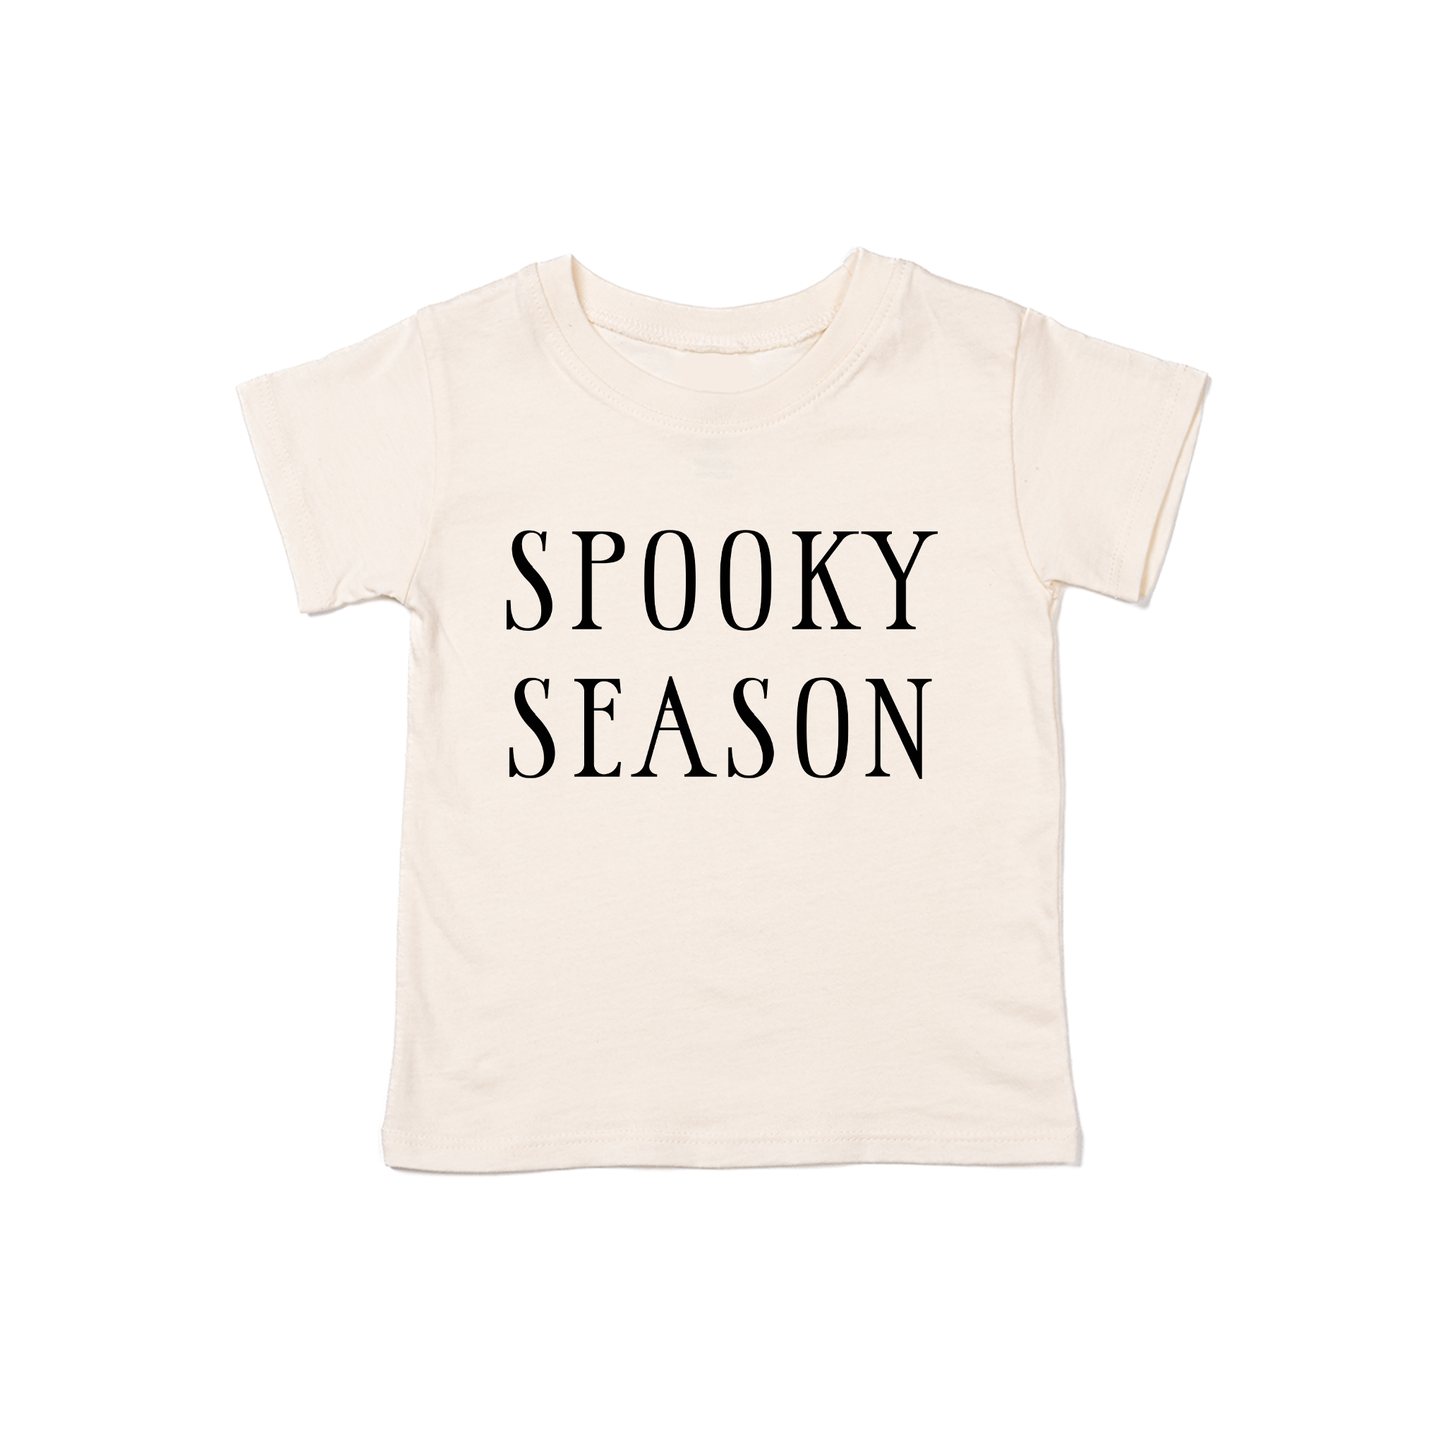 Spooky Season (Black) - Kids Tee (Natural)